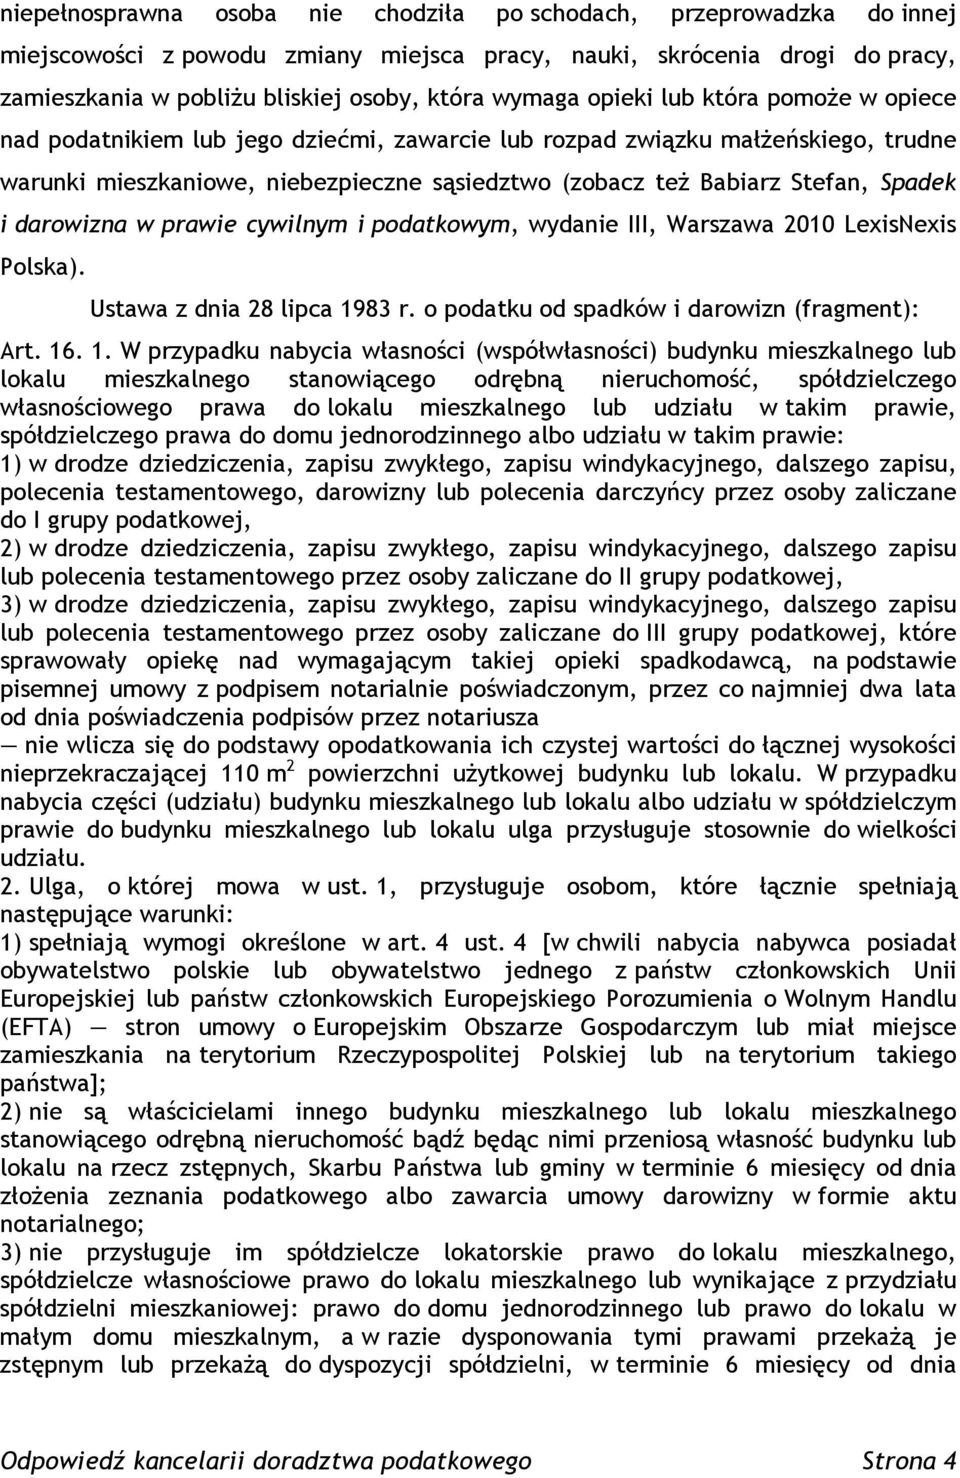 darowizna w prawie cywilnym i podatkowym, wydanie III, Warszawa 2010 LexisNexis Polska). Ustawa z dnia 28 lipca 19